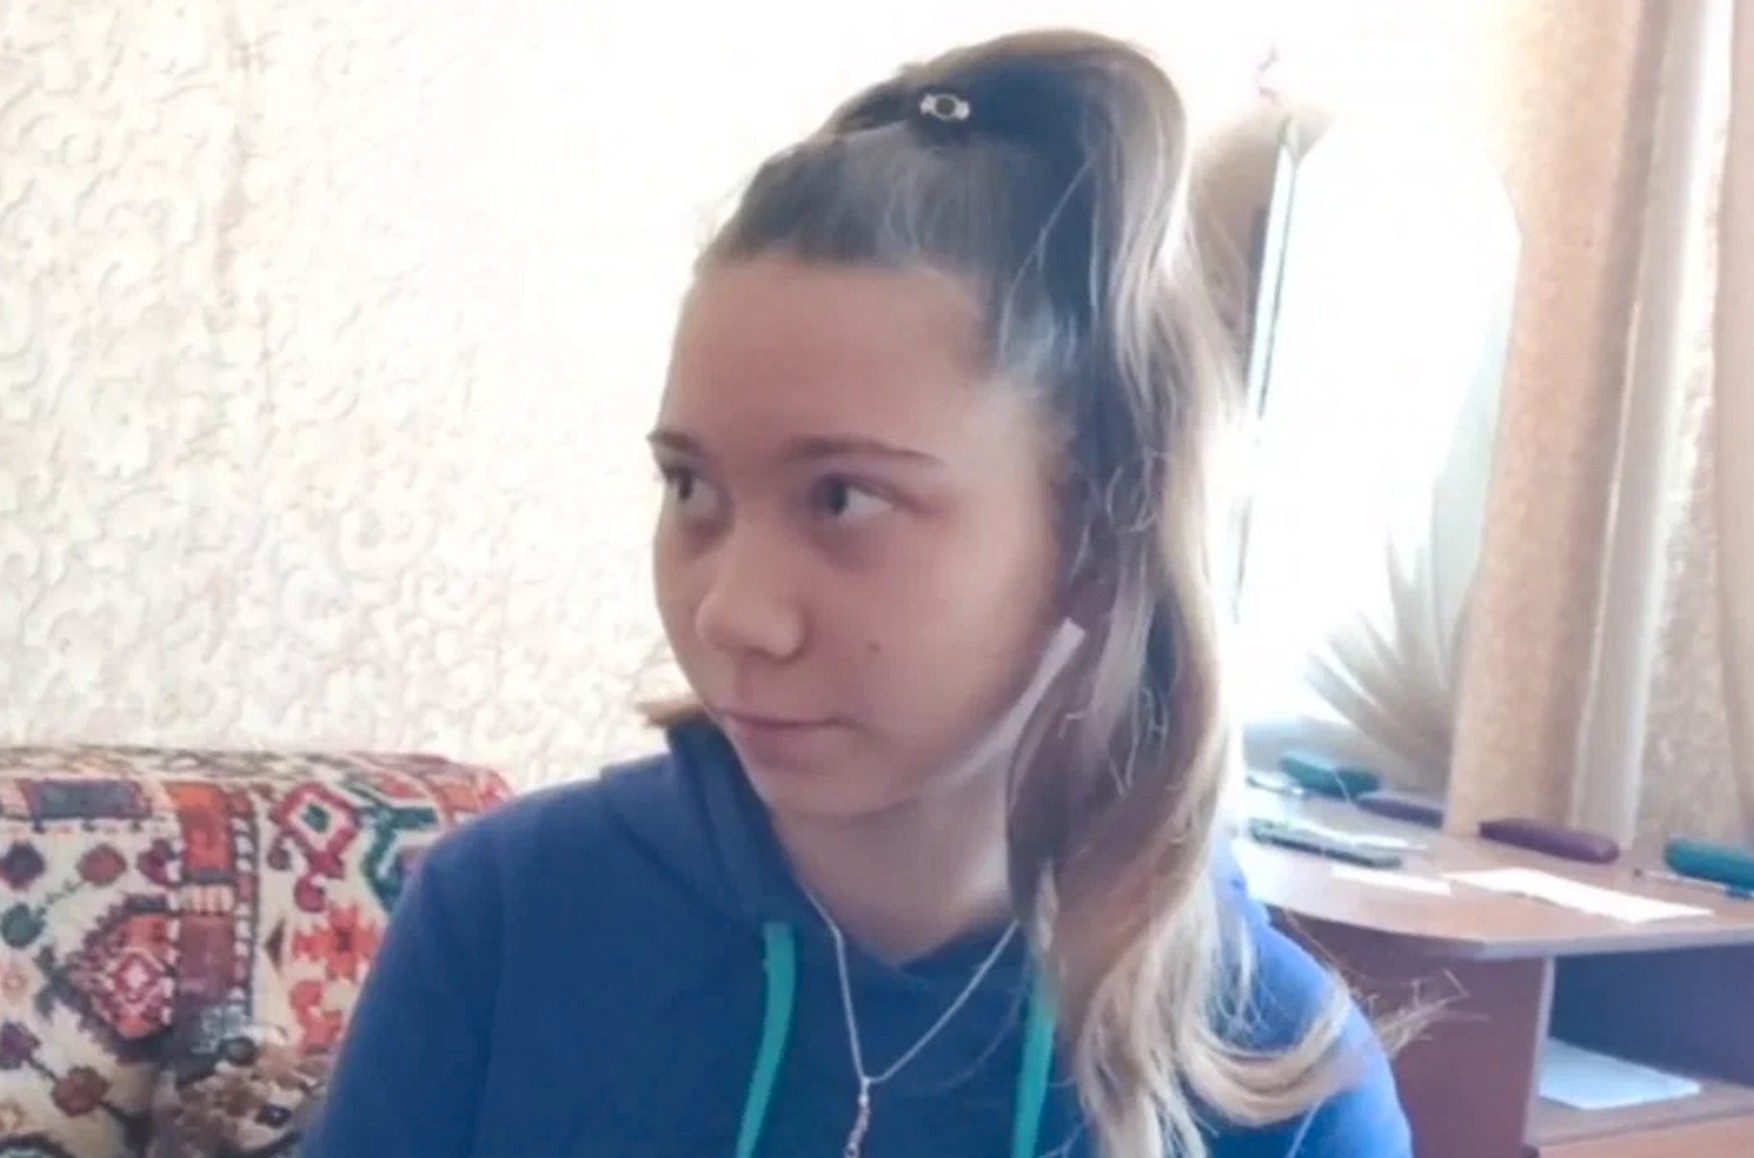 Удерживаемой в приюте Маше Москалевой не дают общаться с отцом и посетителями